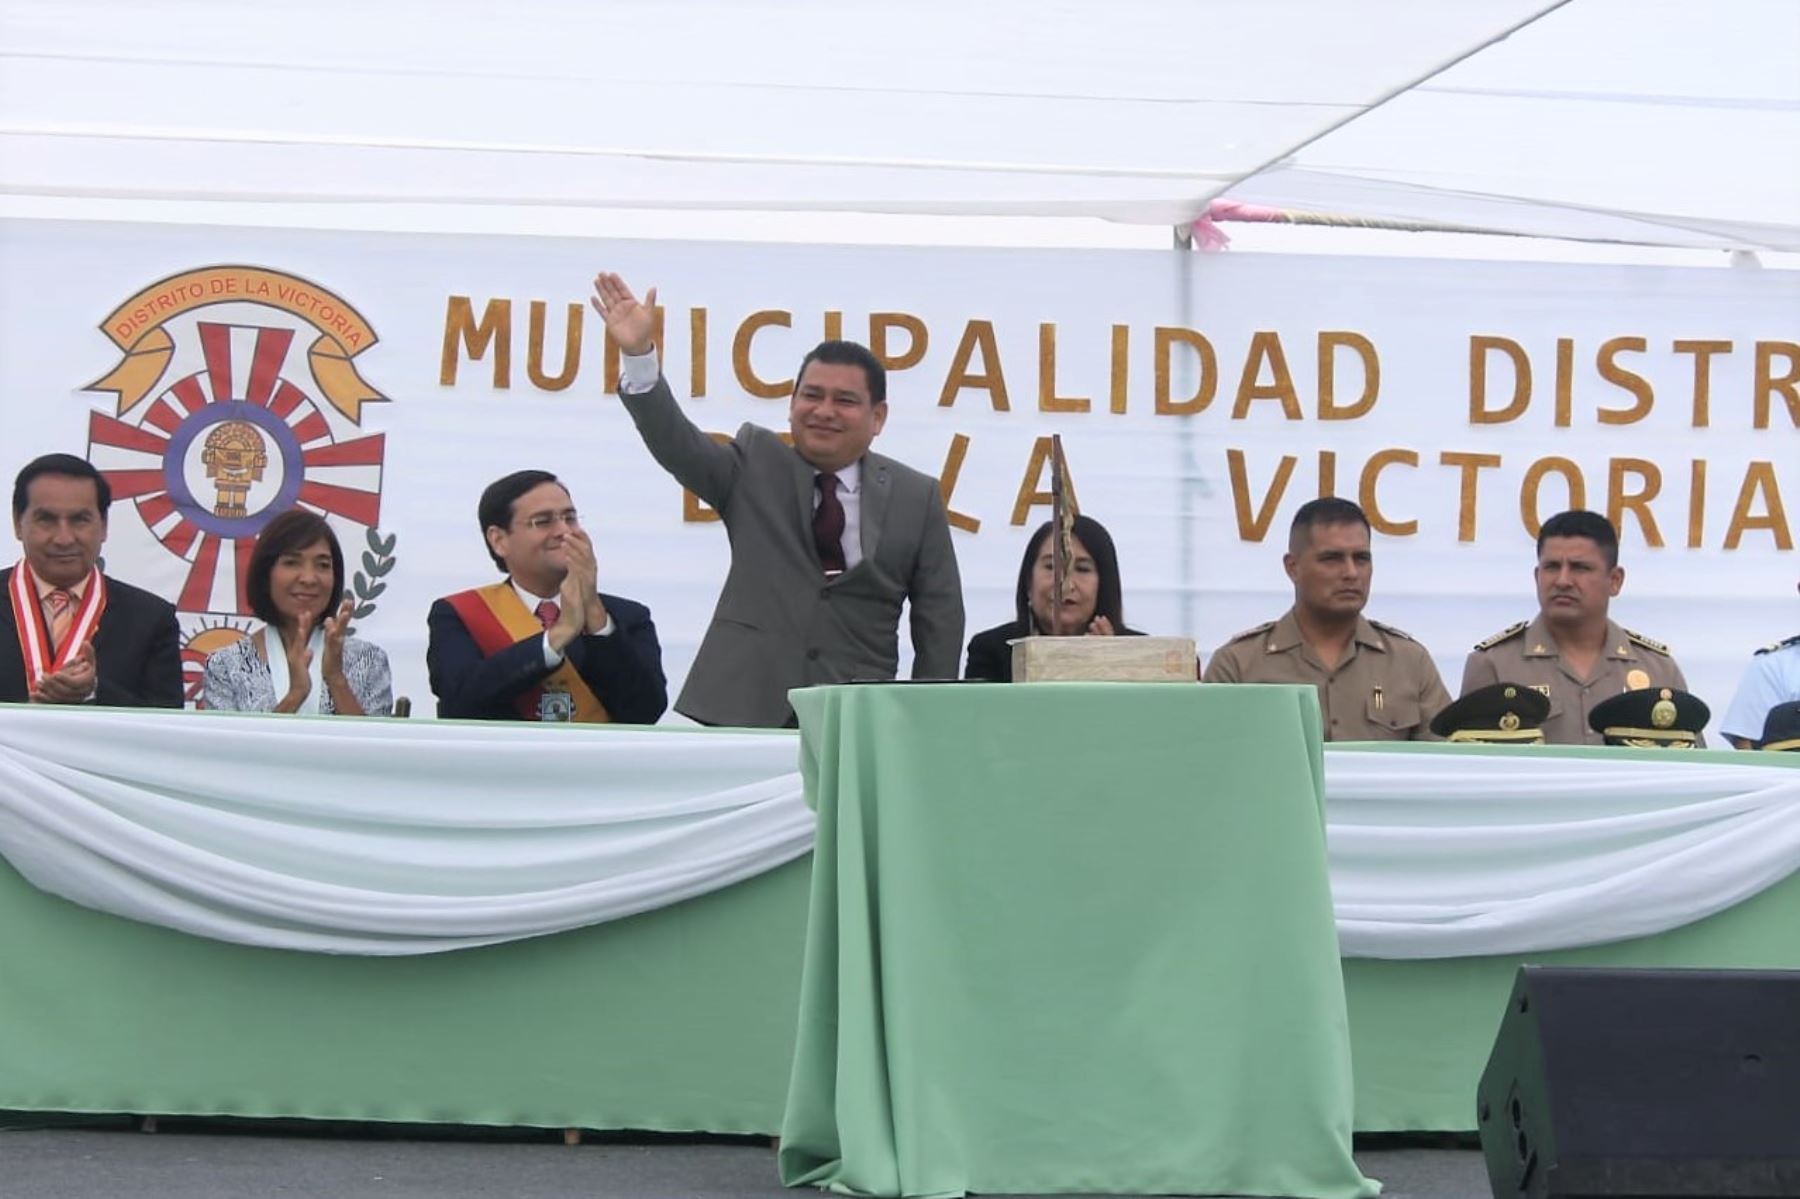 El alcalde distrital de La Victoria, Edwin Vásquez, se comprometió a cerrar las brechas sociales en su jurisdicción.